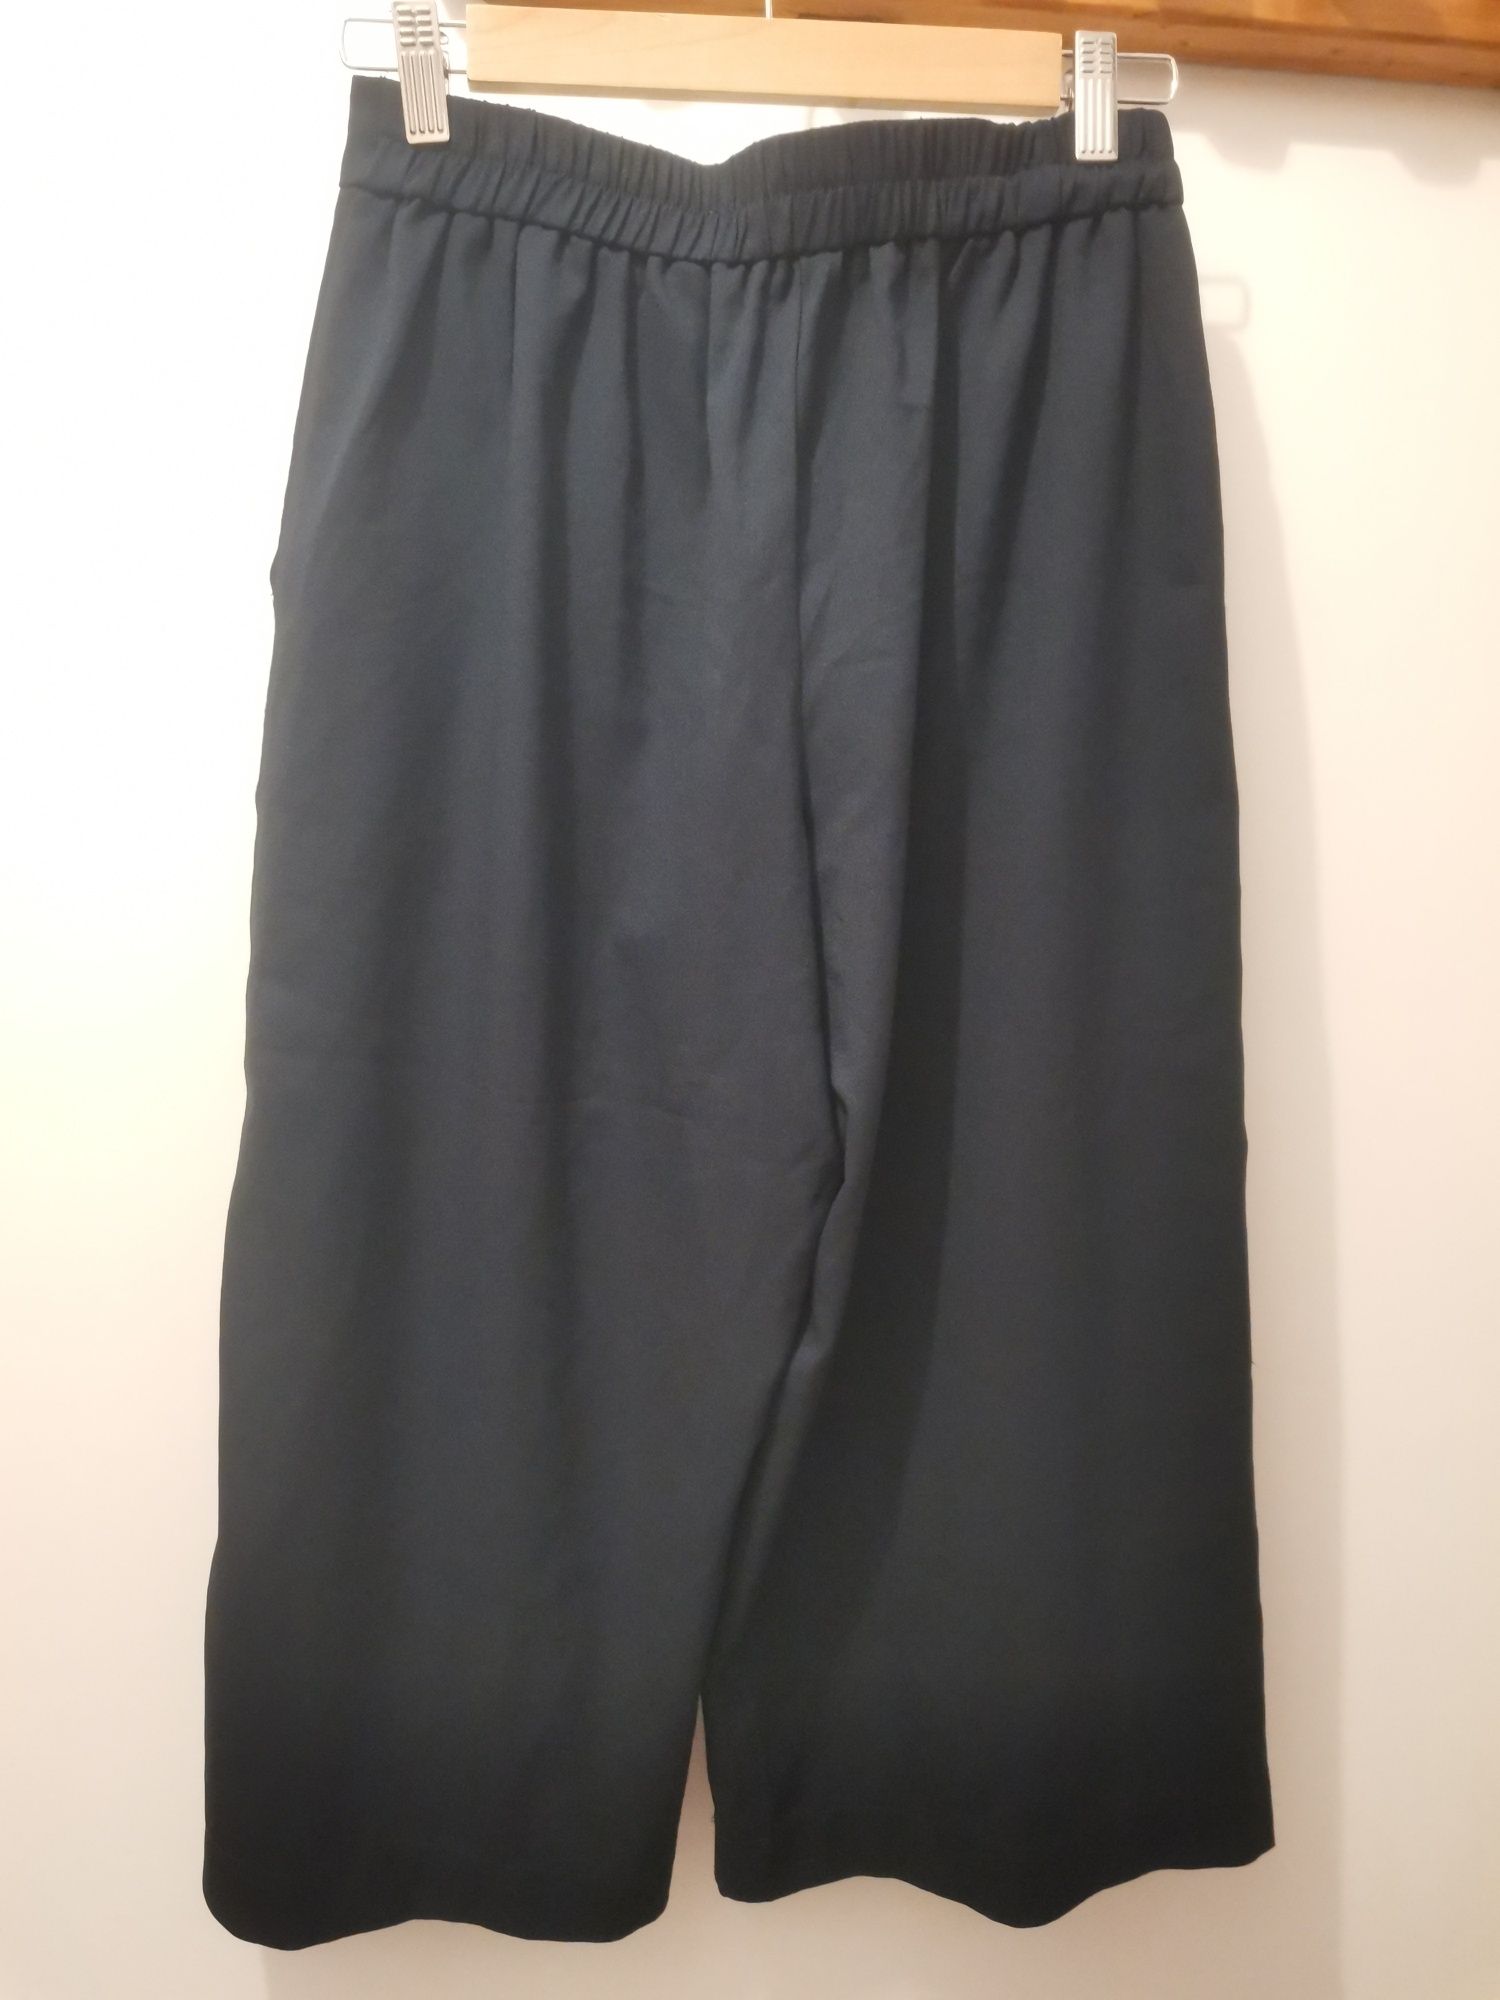 Pantaloni culottes Vero Moda 34